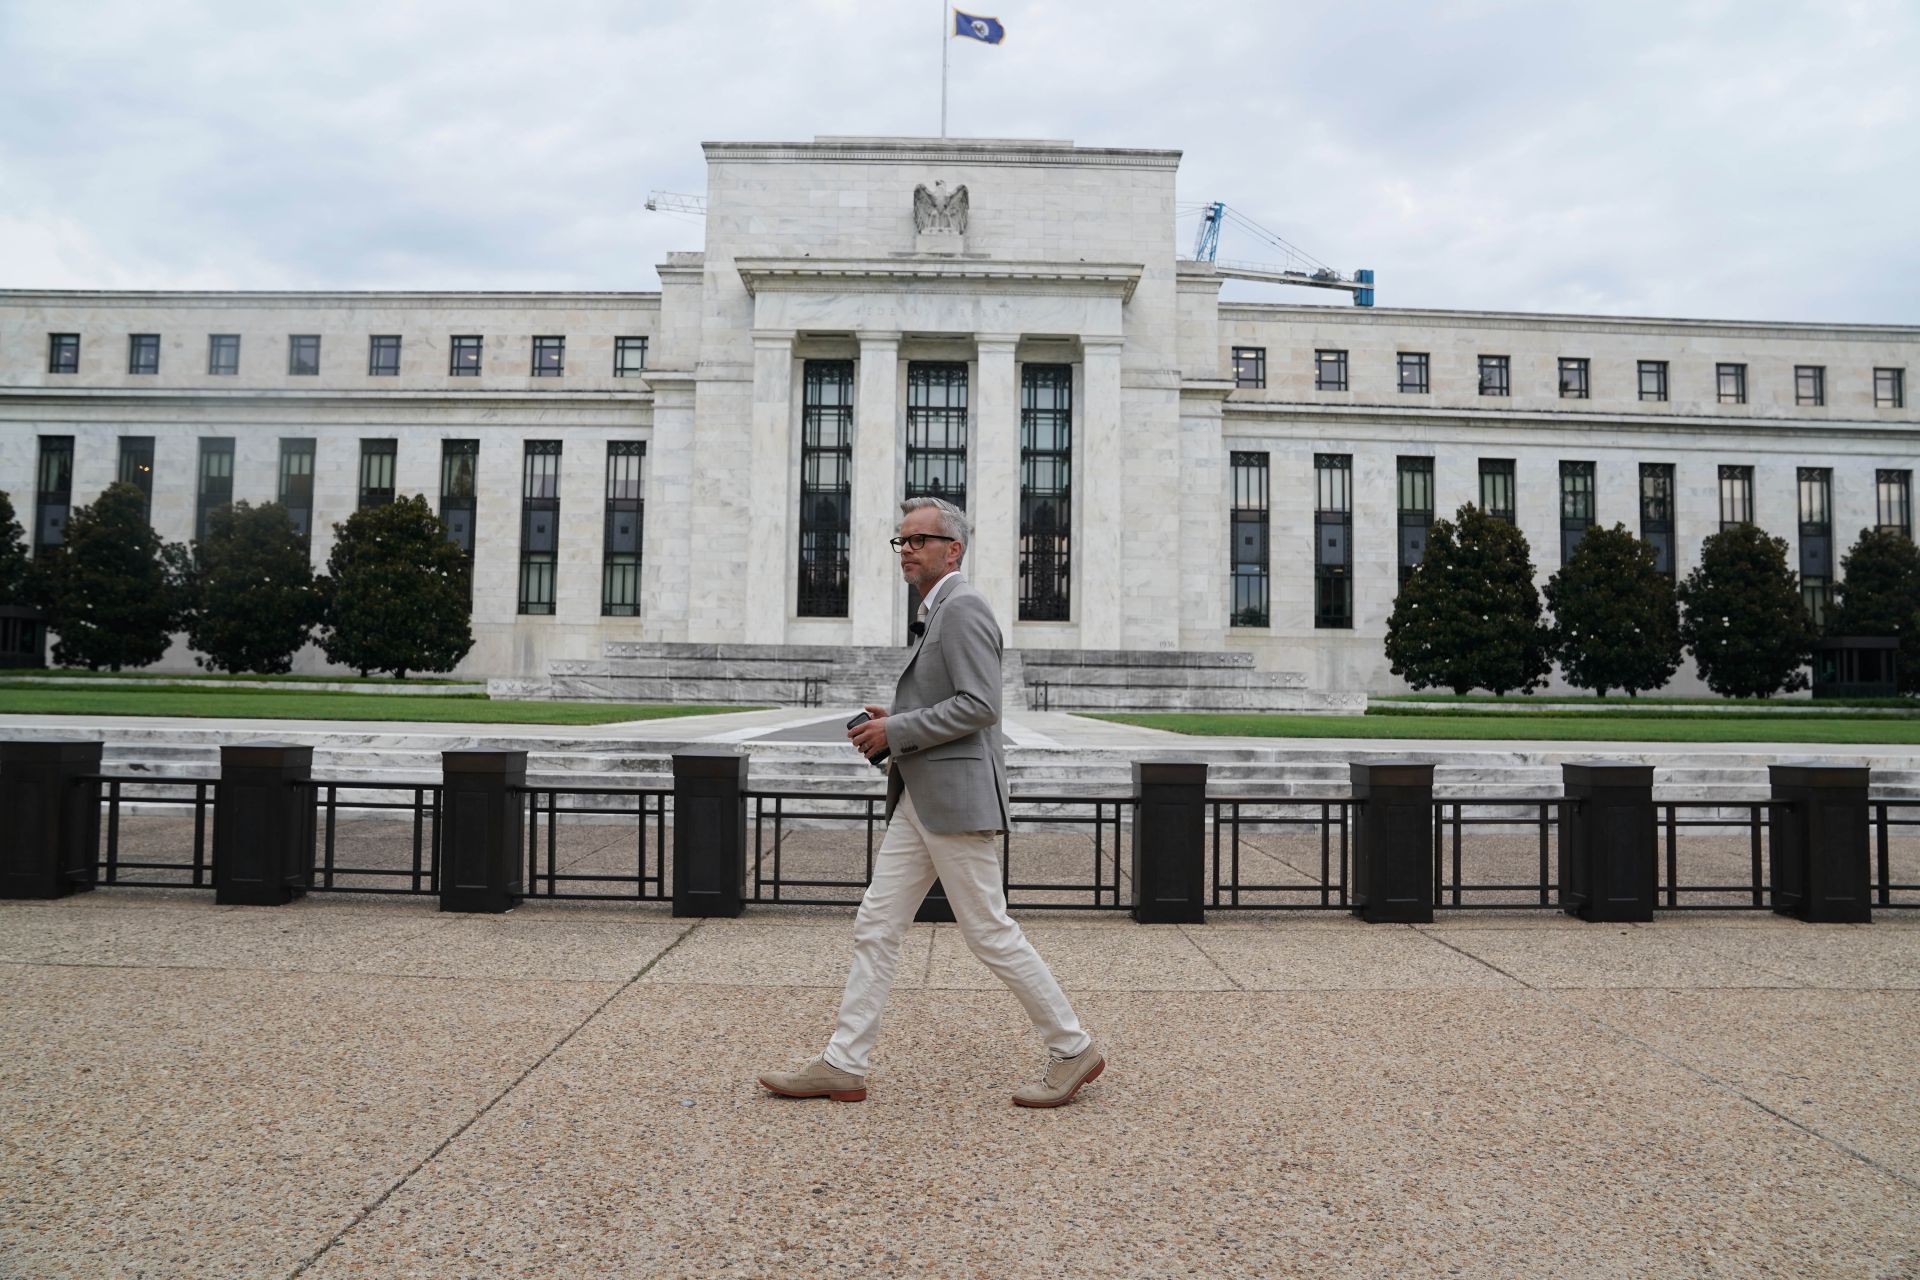 Възможно Фед да смекчи редица изисквания и регулации за американските банки в опит да стимулира кредитирането, смята Бил Нелсън